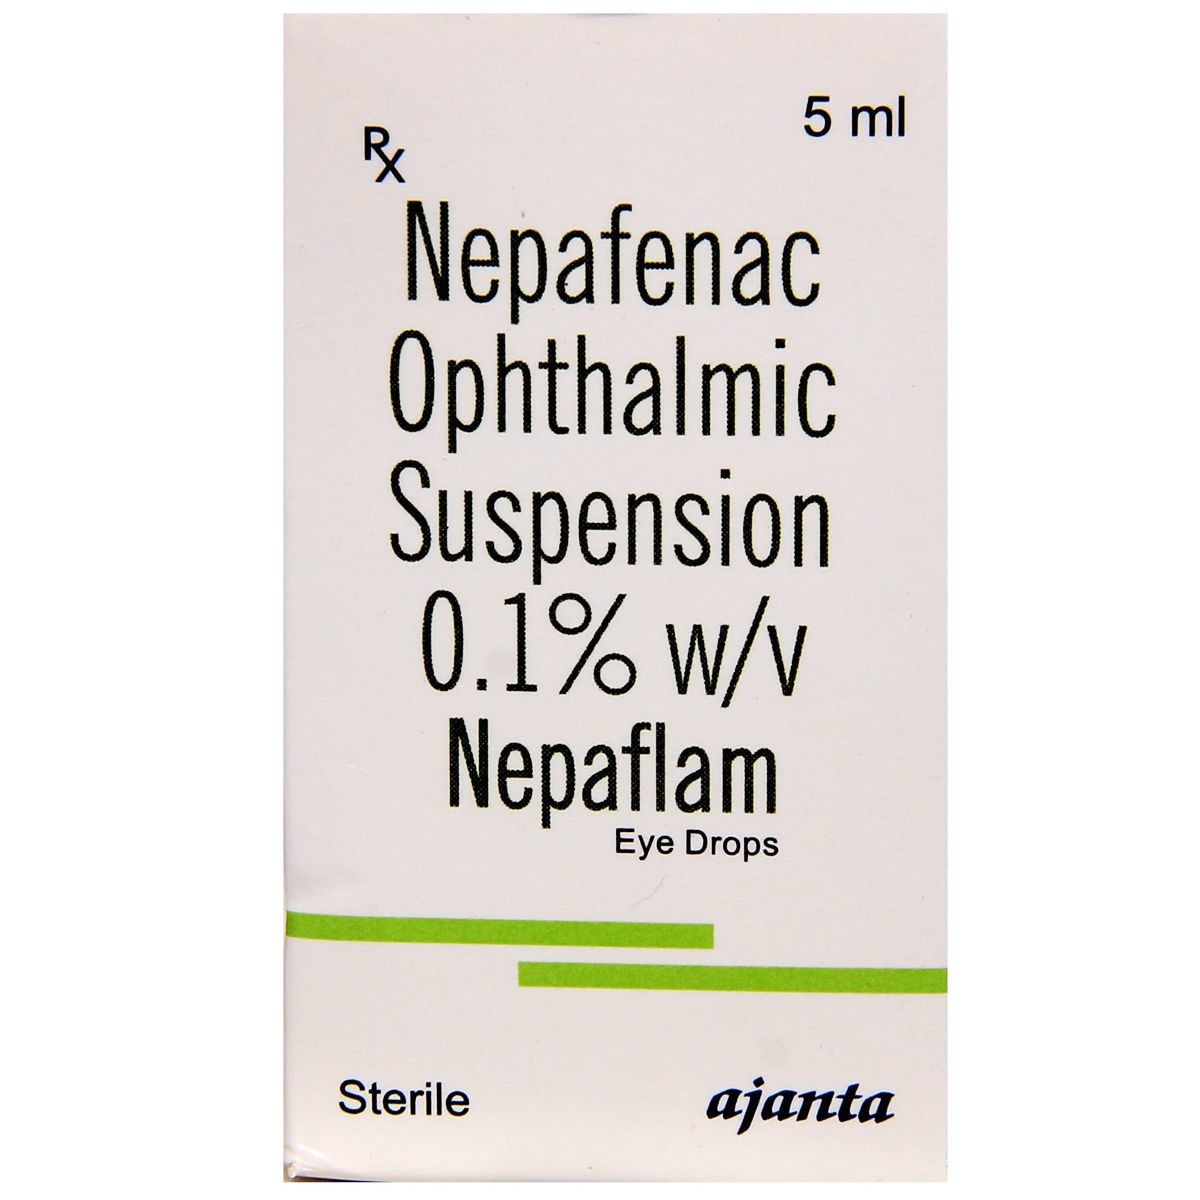 Buy Nepaflam Eye Drops 5 ml Online